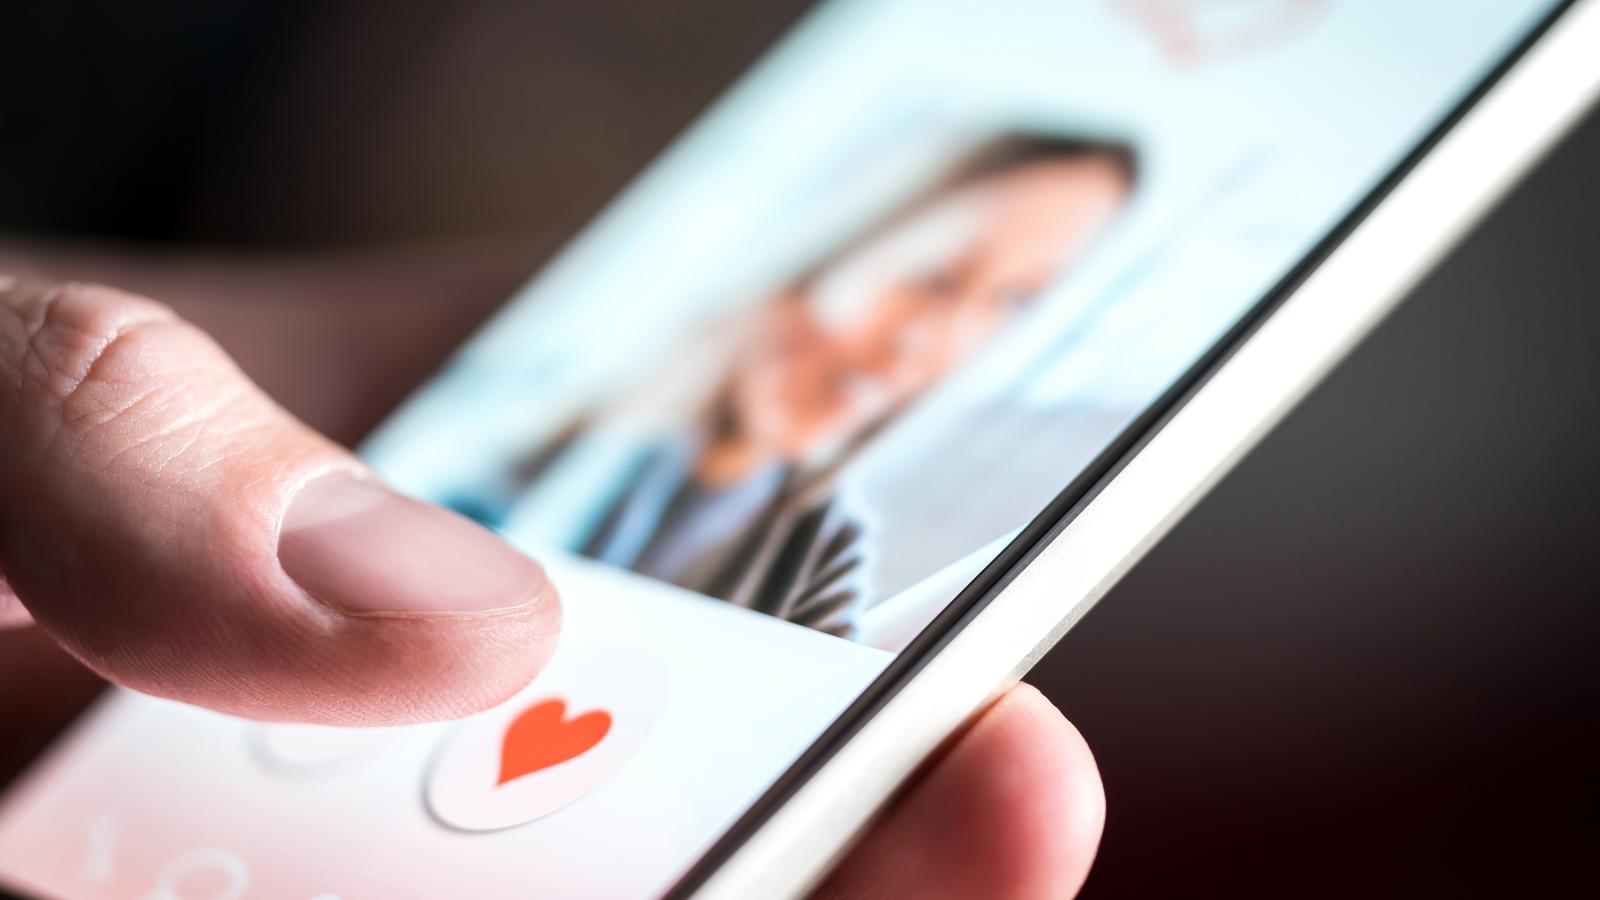 Online dating app in Minneapolis